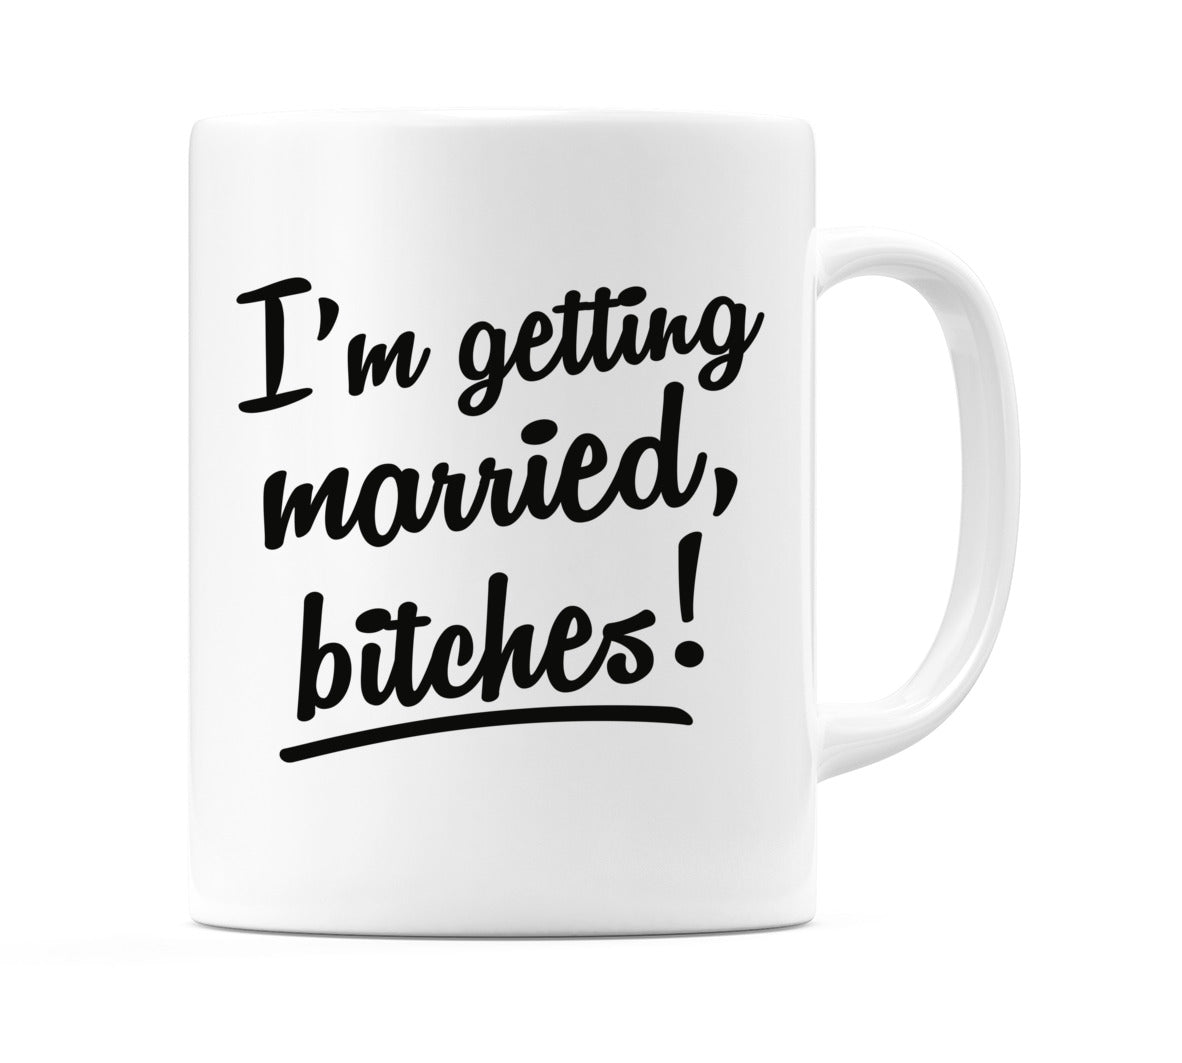 I'm getting married bitches! Mug